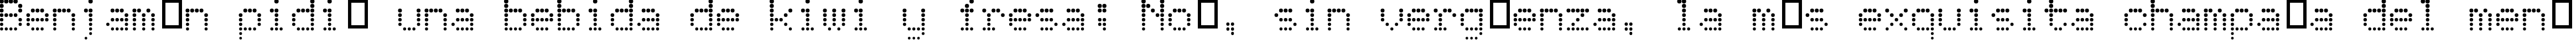 Пример написания шрифтом Atomic Clock Radio текста на испанском